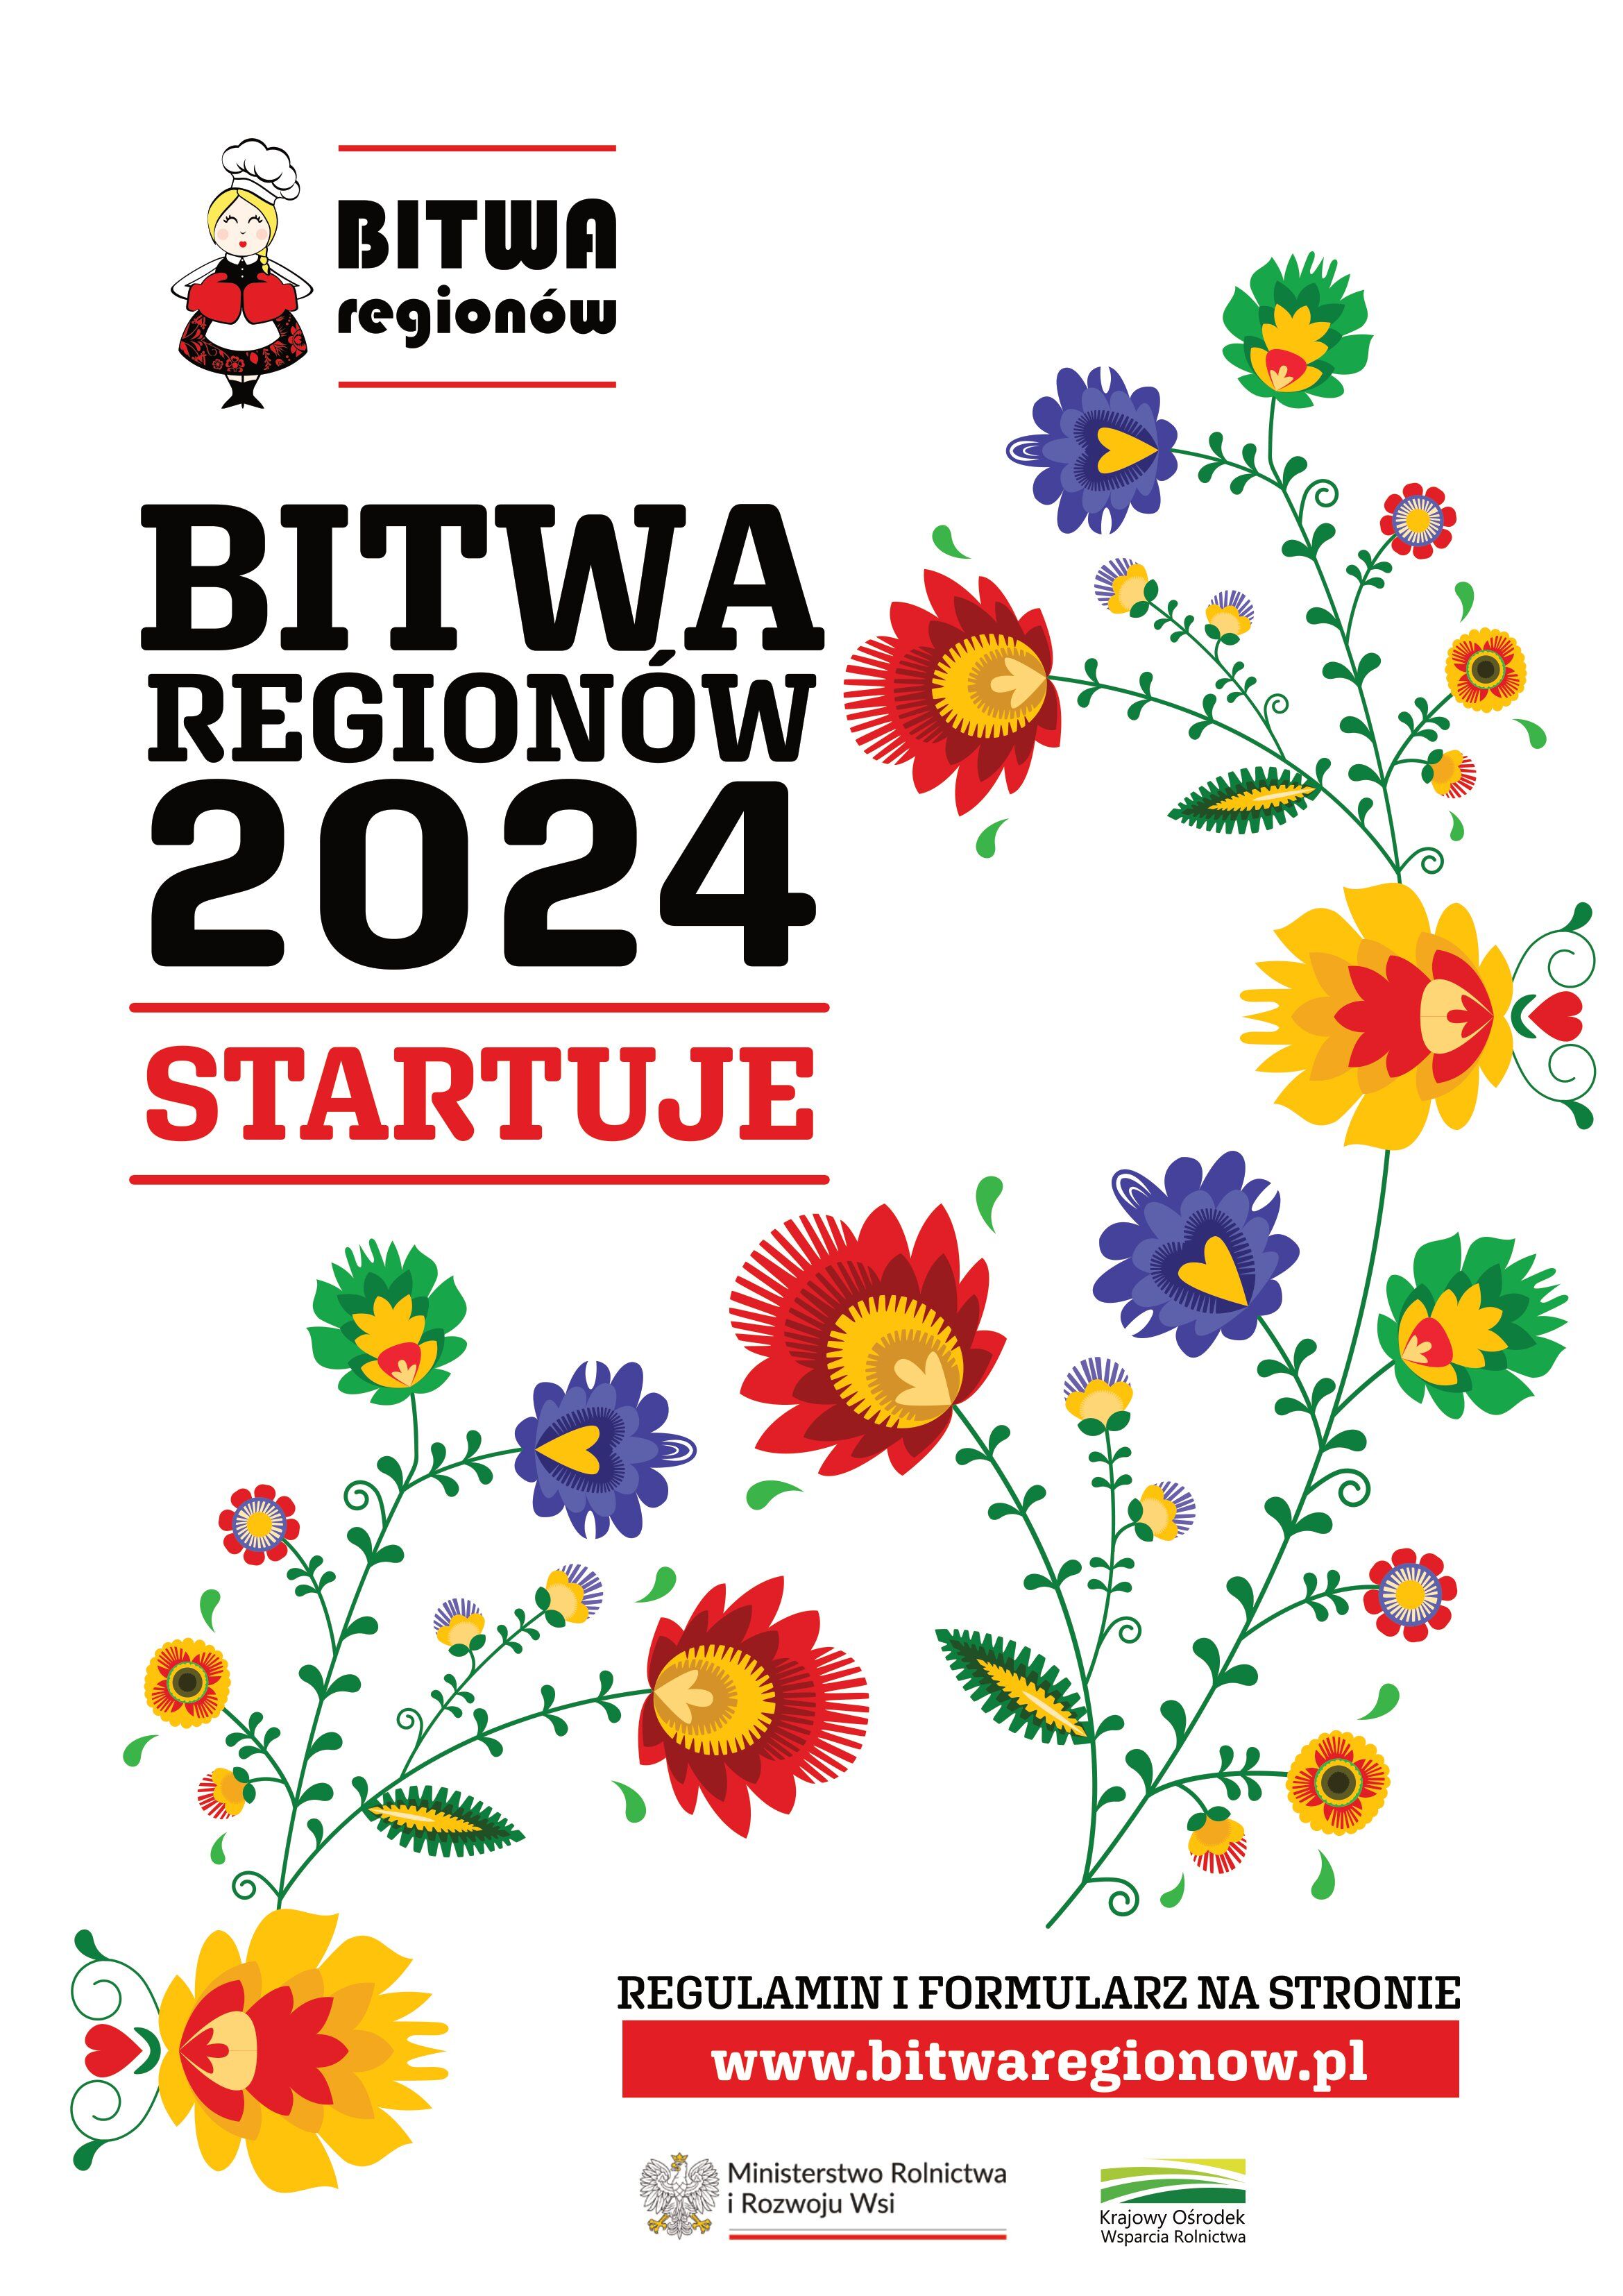 Plakat "BITWA REGIONÓW 2024 STARTUJE" z kolorowymi kwiatami i grafiką kobiety w regionalnym stroju, informacjami o rejestracji i logo Ministerstwa Rolnictwa.